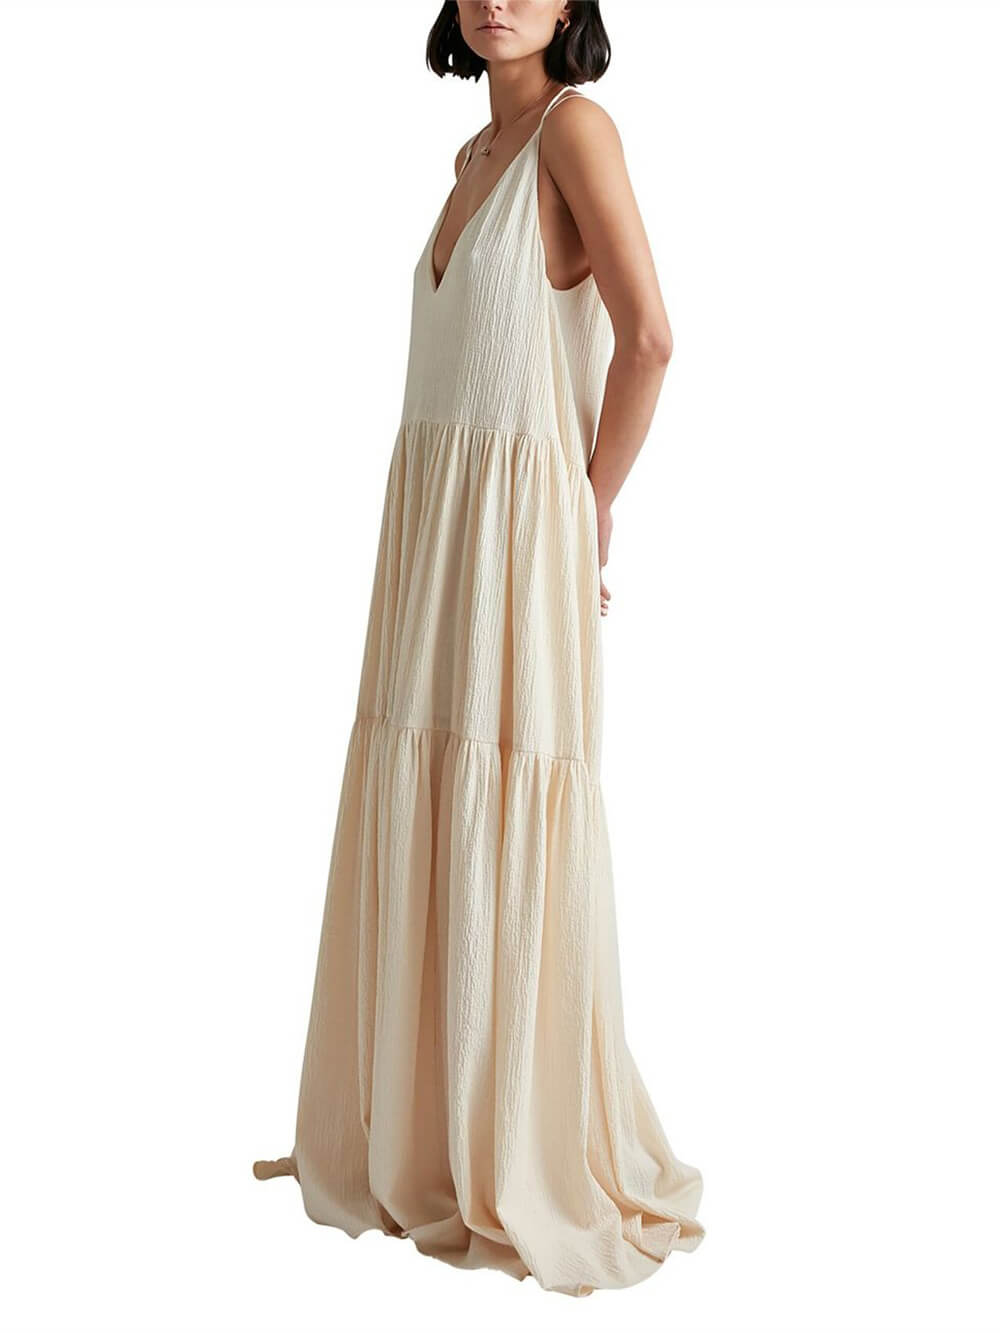 Elegancka sukienka maxi z głębokim dekoltem w kształcie litery V